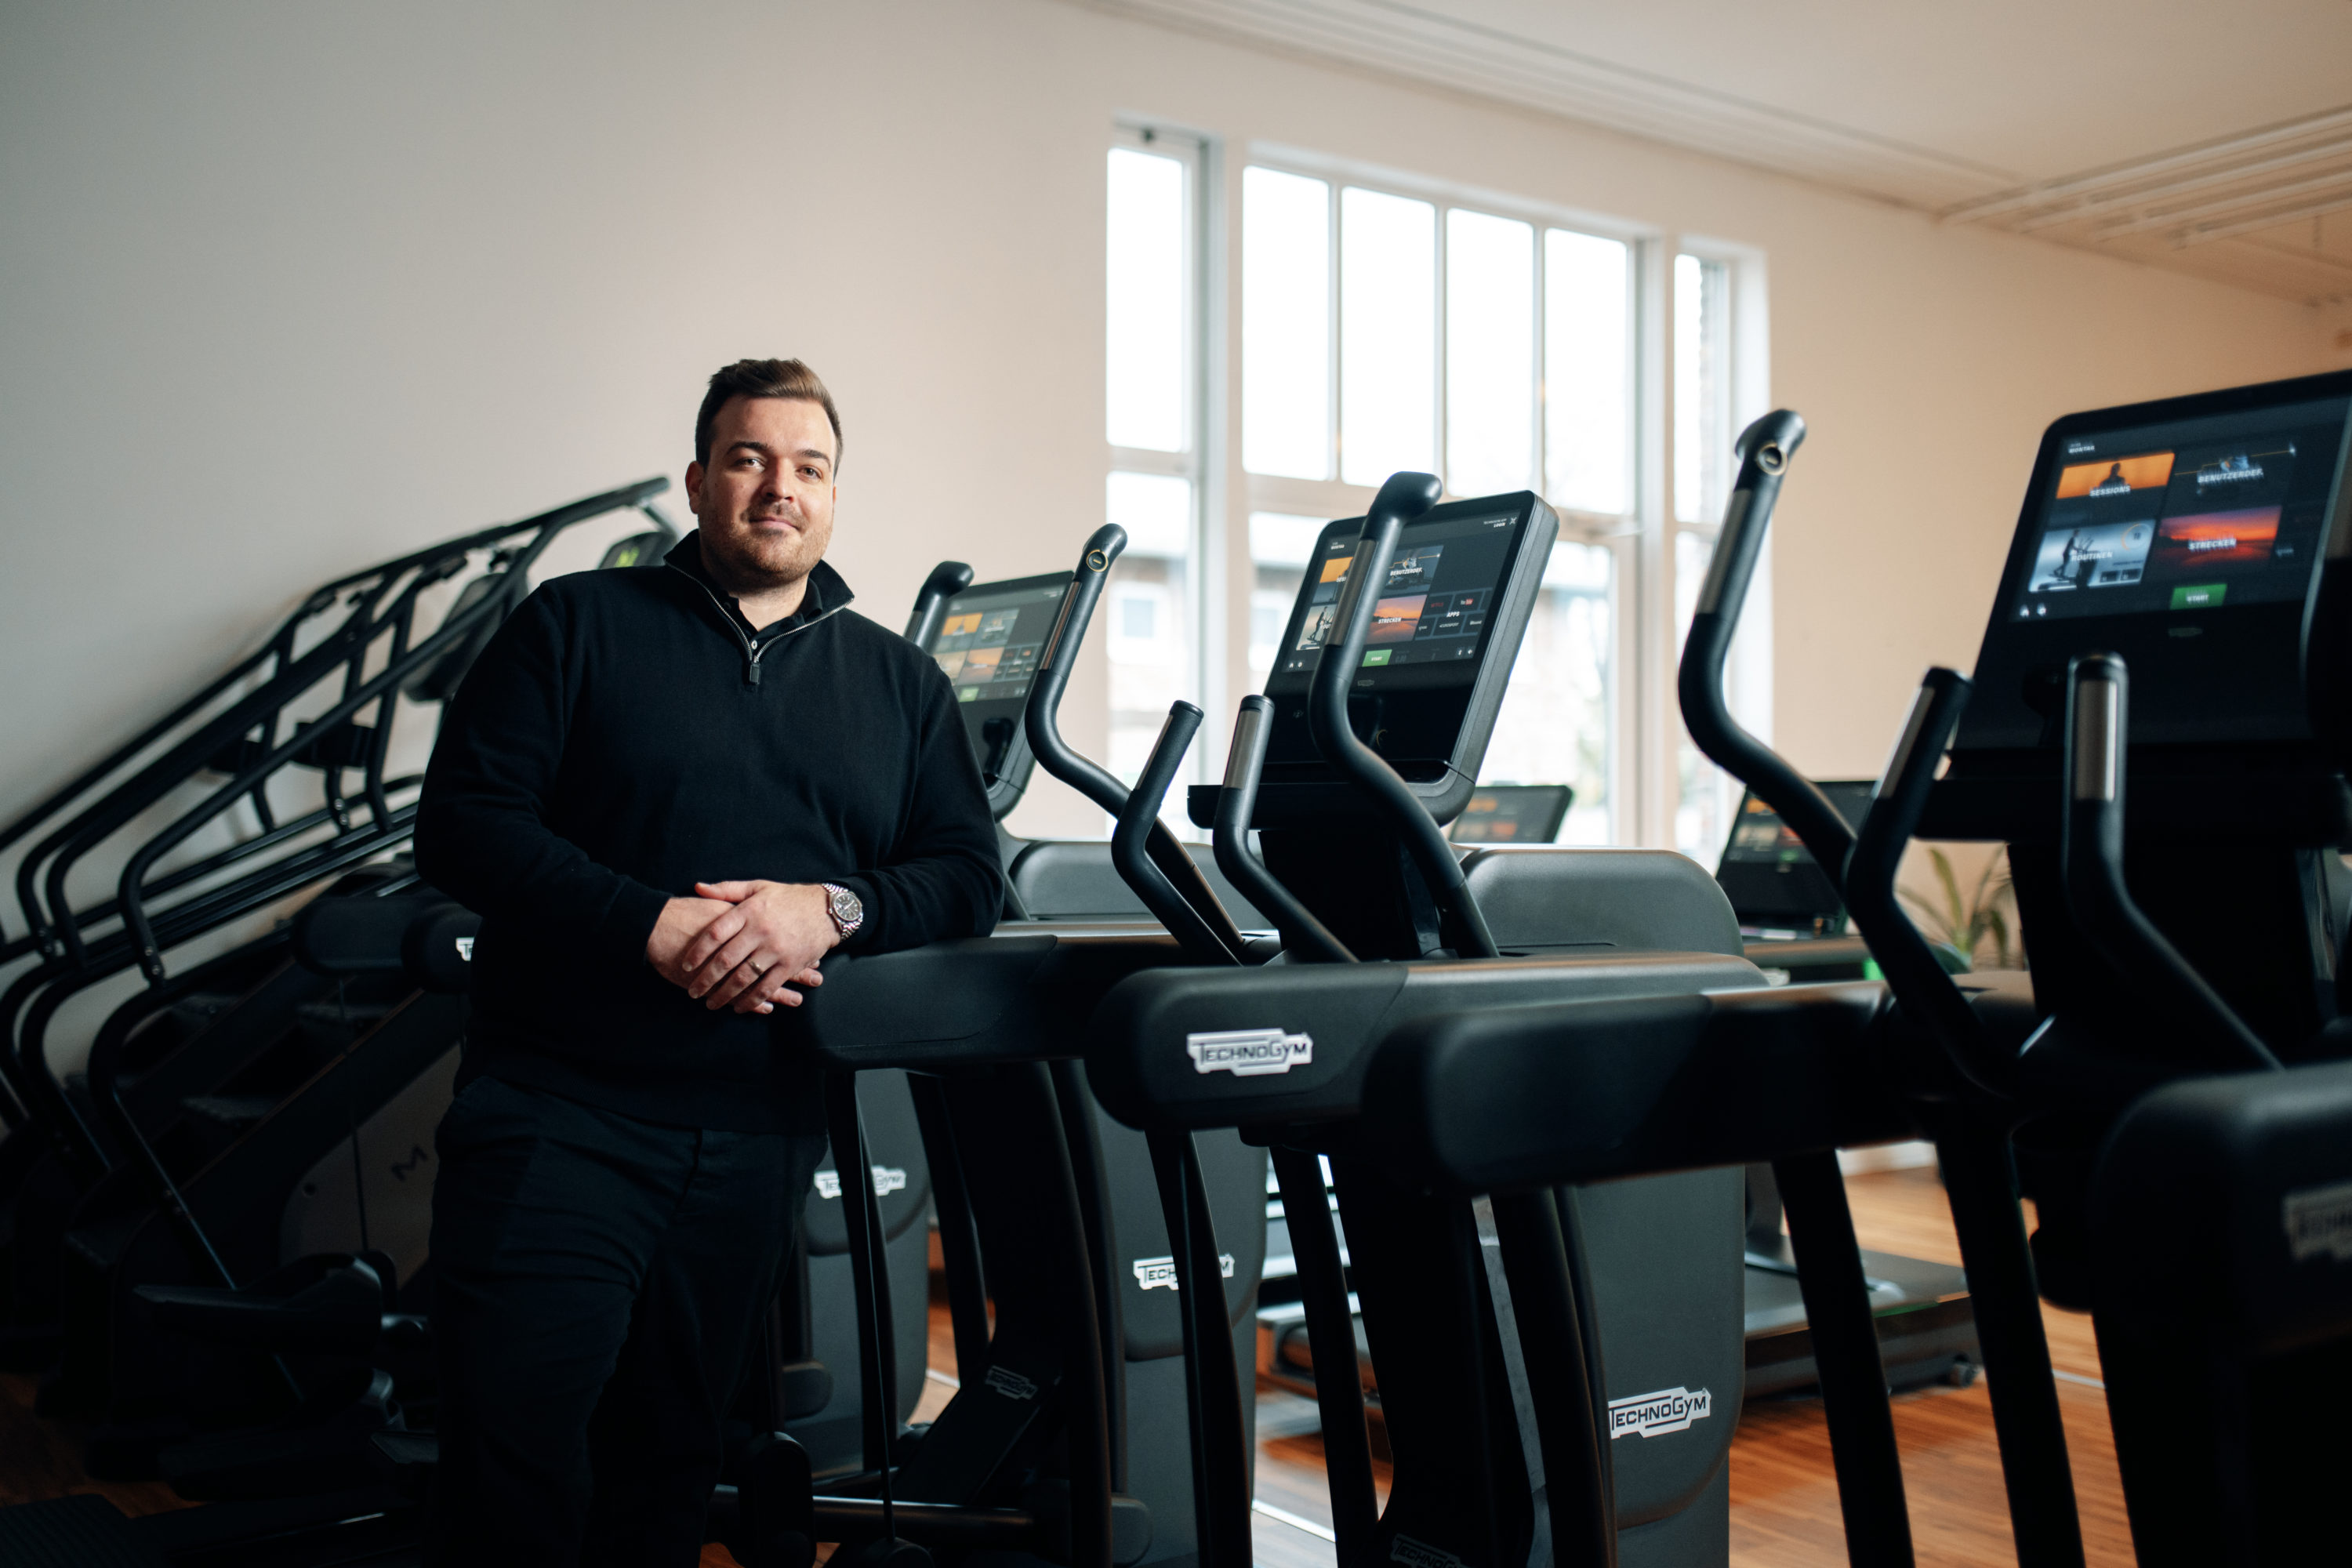 Daniel Erpenbach in seinem Fitnessclub in Erftstadt mit den neuen TECHNOGYM ARTIS Geräten. Der Gründer und Inhaber der SPORTS AND MOTION Clubs hat die Mitgliederzufriedenheit im Fokus.